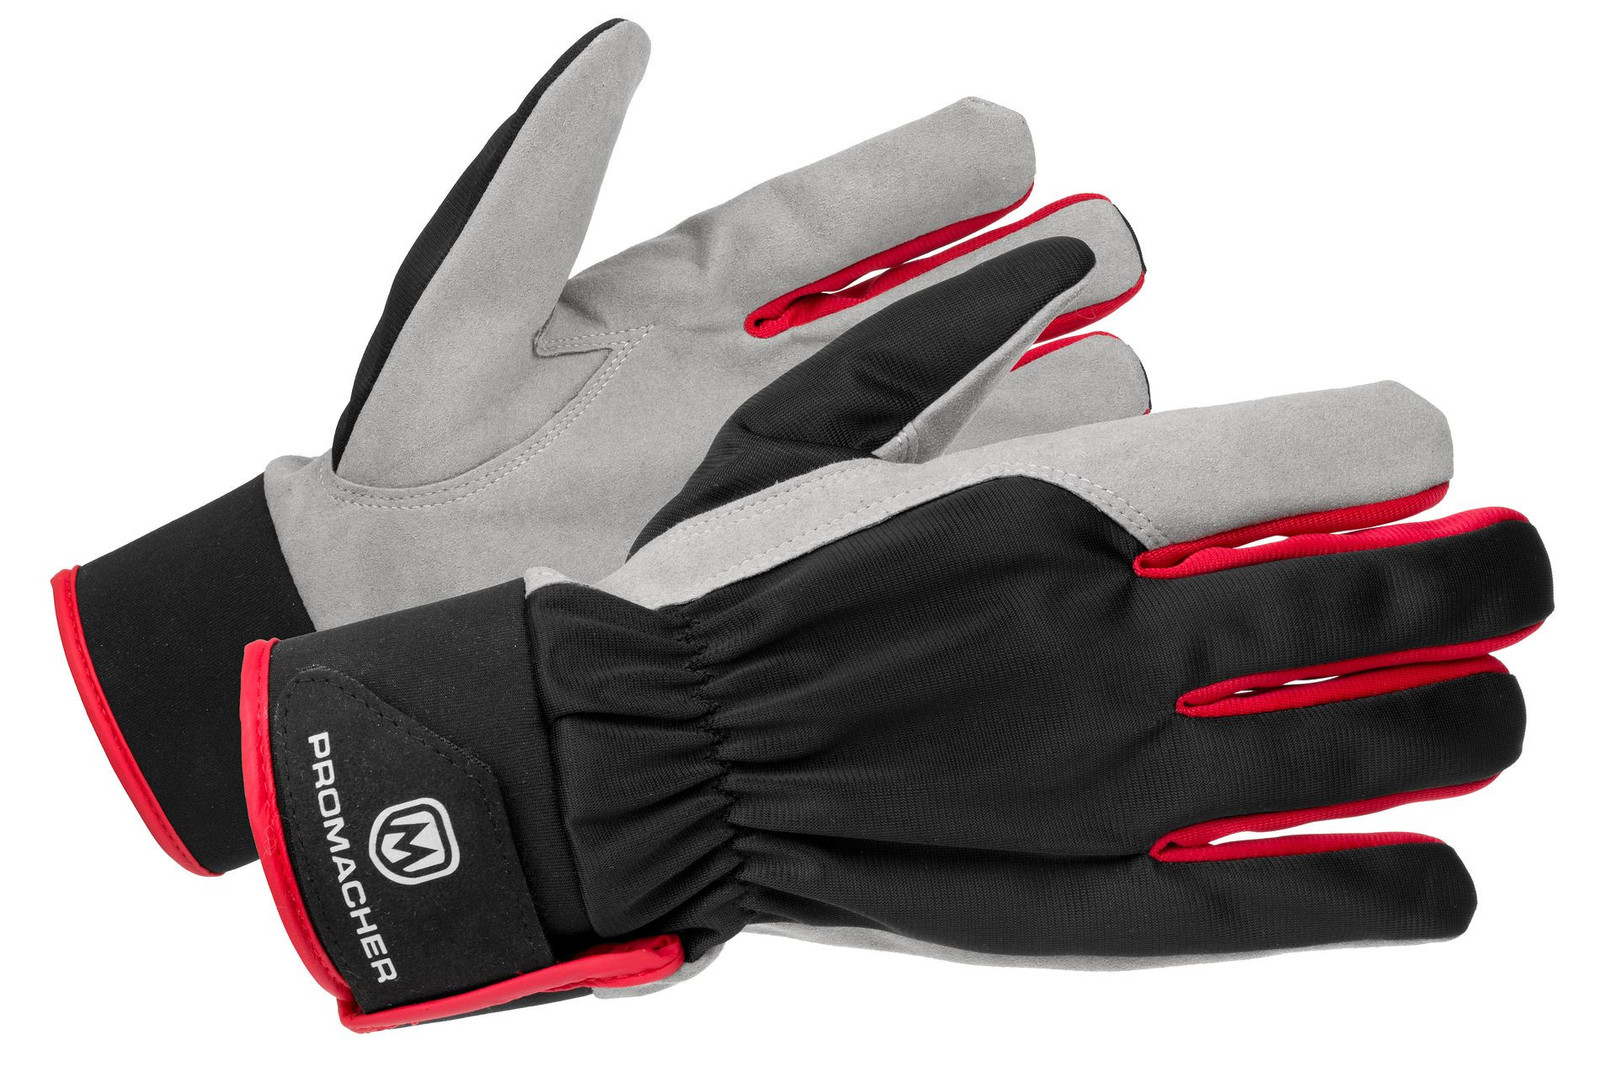 Pracovné rukavice Promacher Carpos Velcro kombinované - veľkosť: 11/XXL, farba: sivá/červená